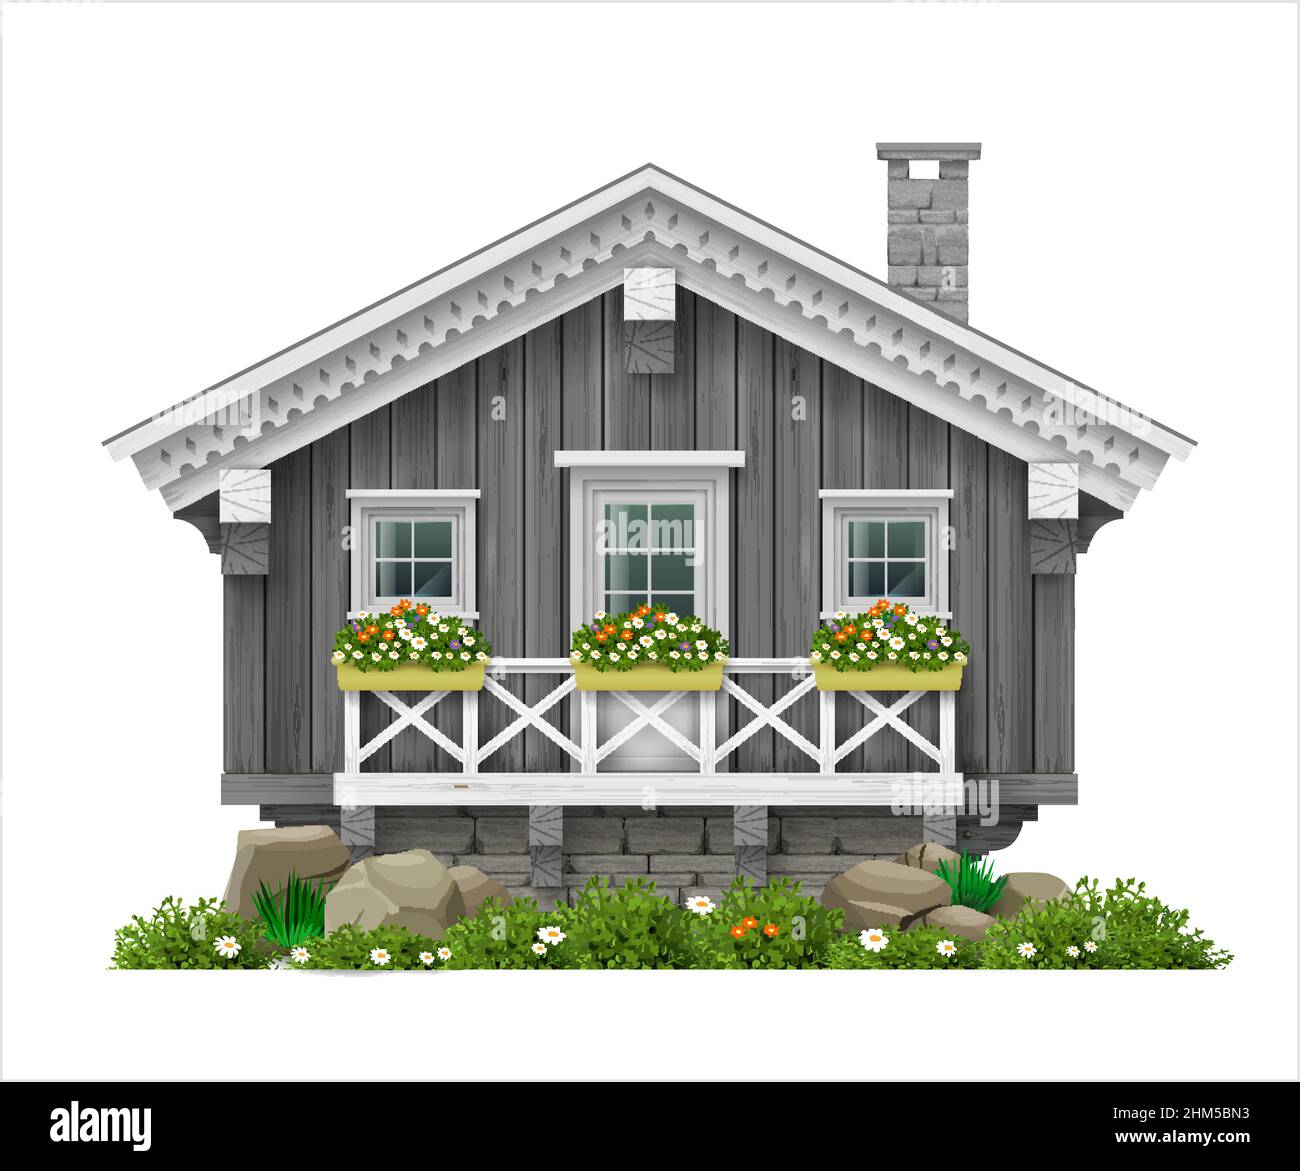 Tradizionale casa in legno finlandese scandinava. Illustrazione Vettoriale